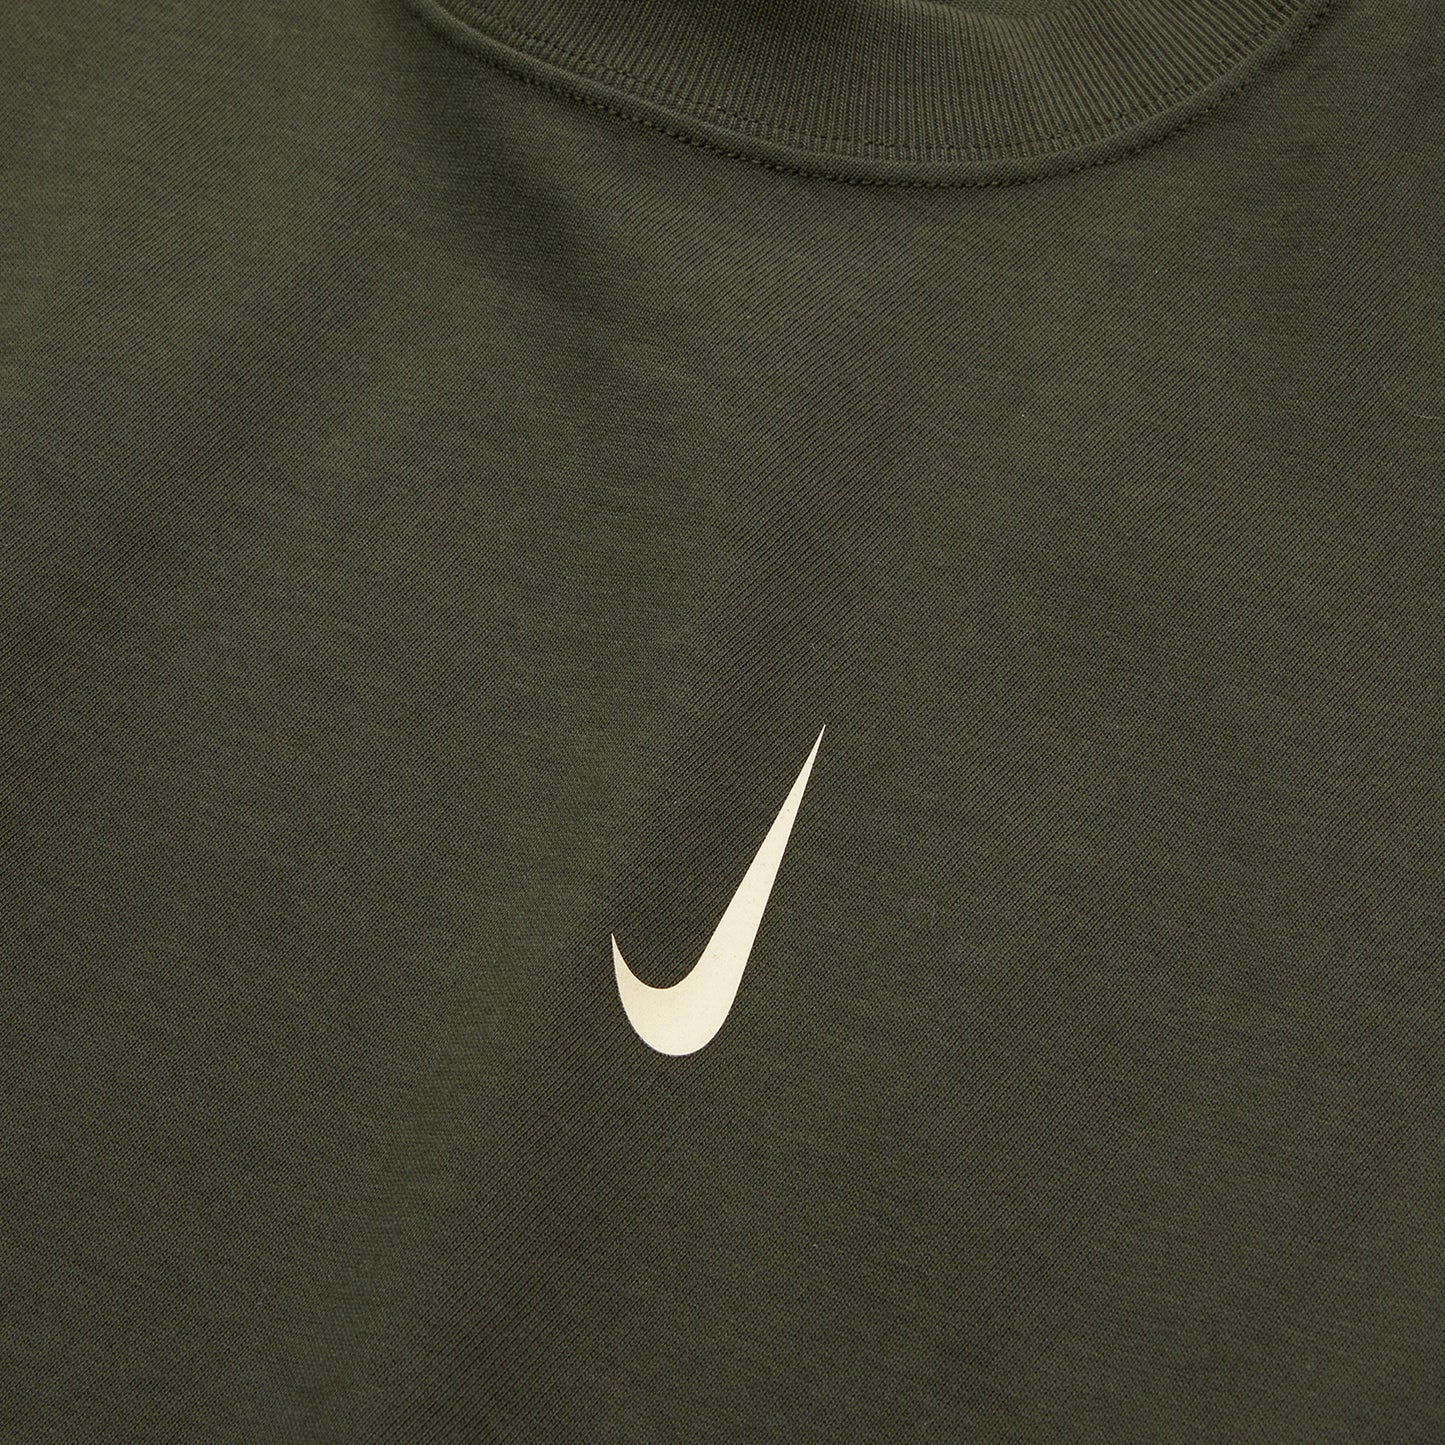 Nike x Billie Eilish T-Shirt (Sequoia/Mushroom)